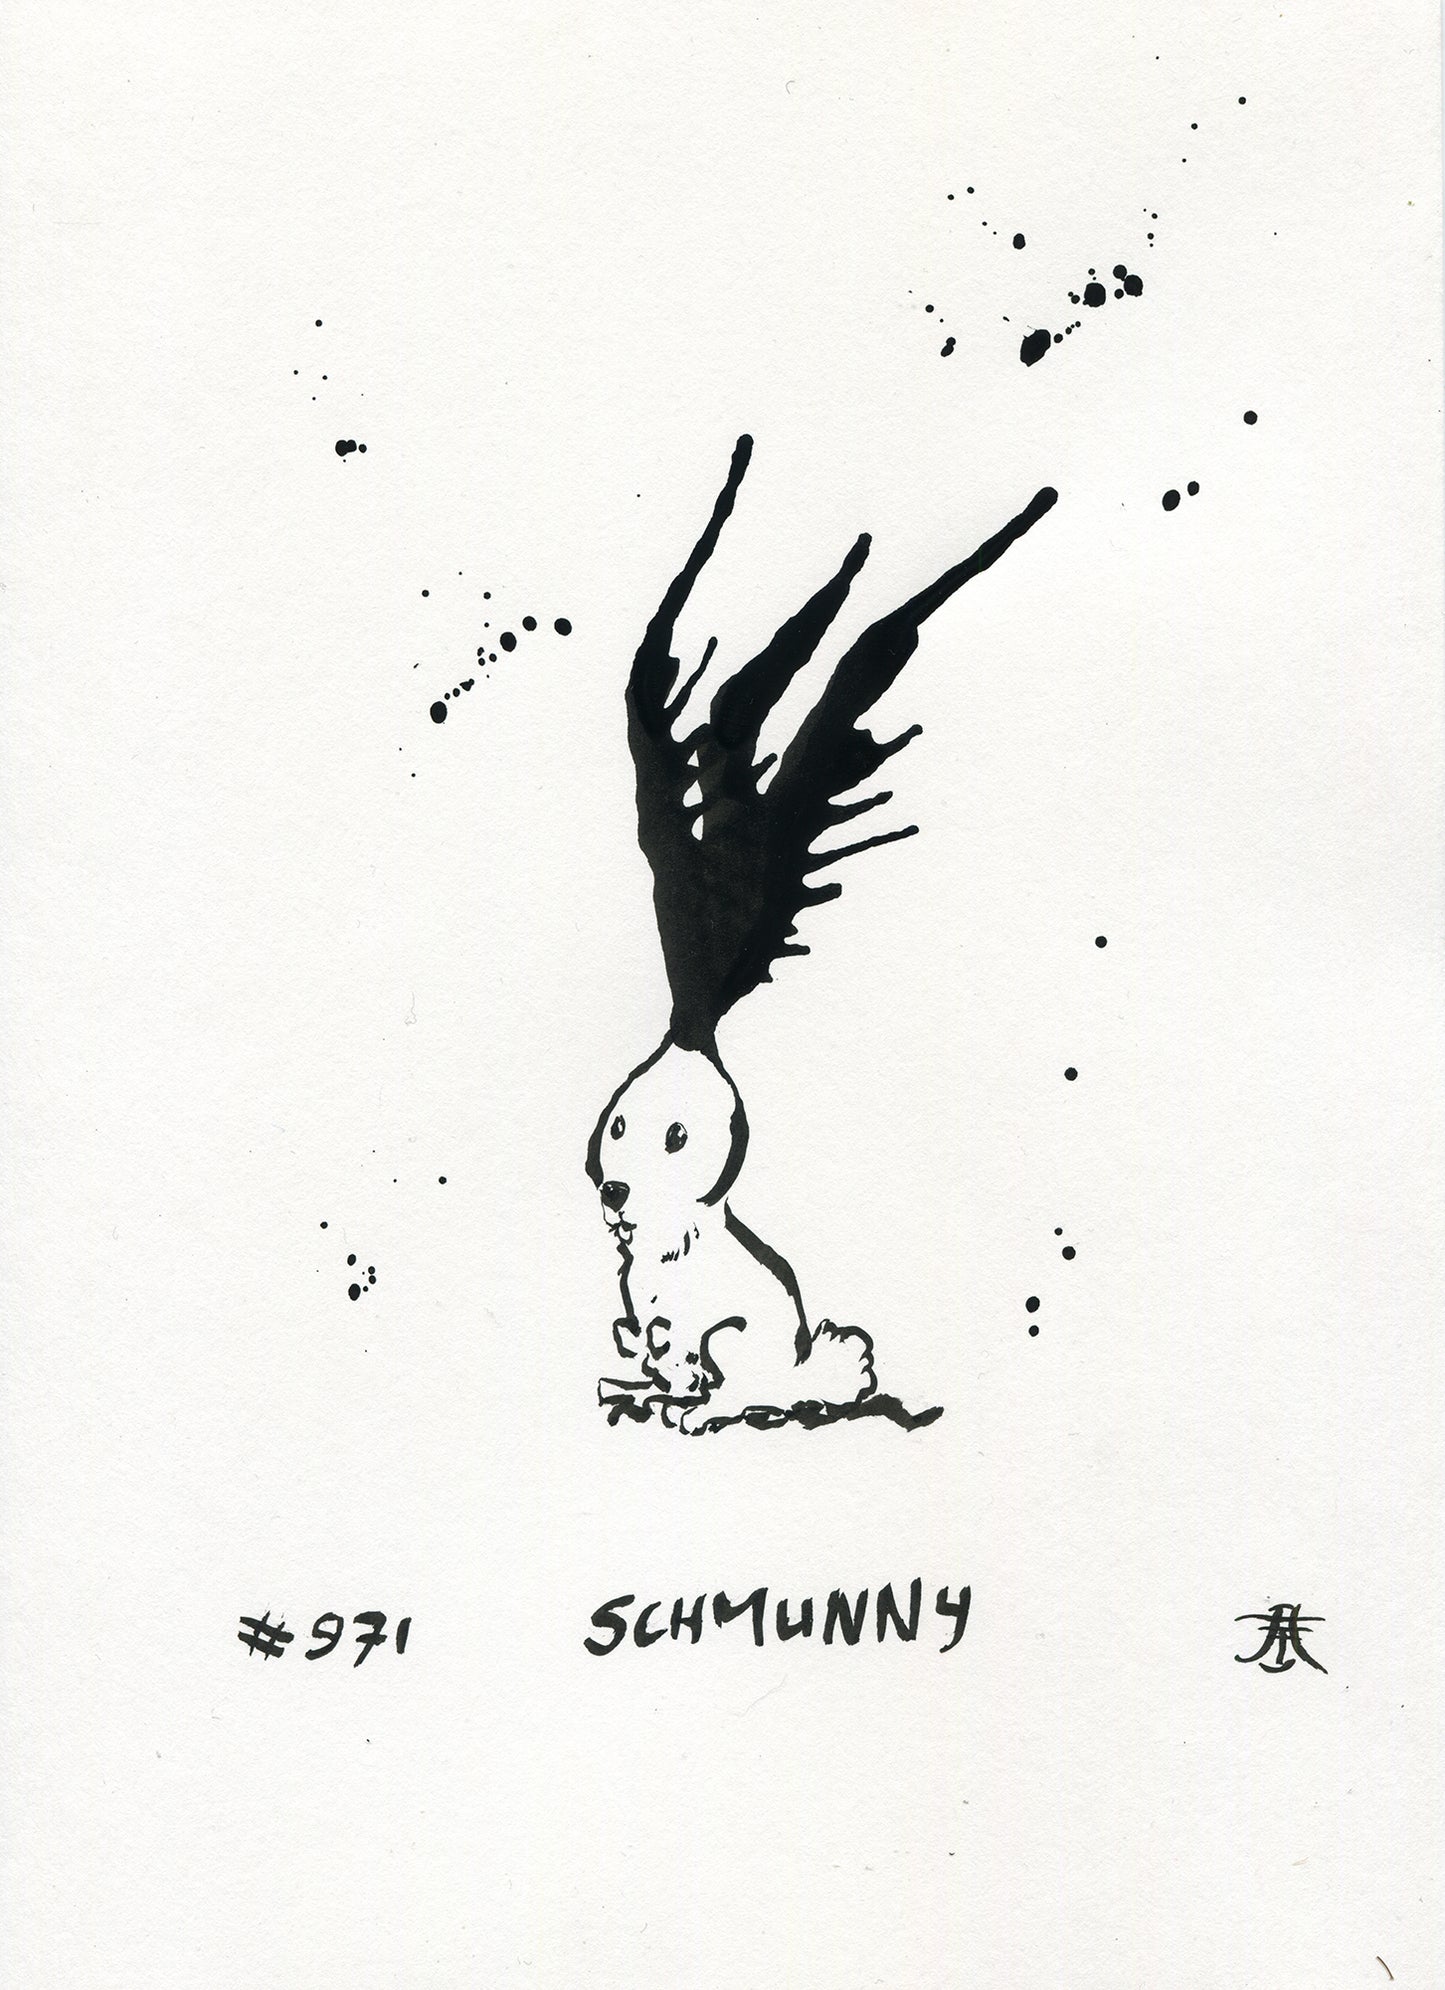 # 971 - Schmunny